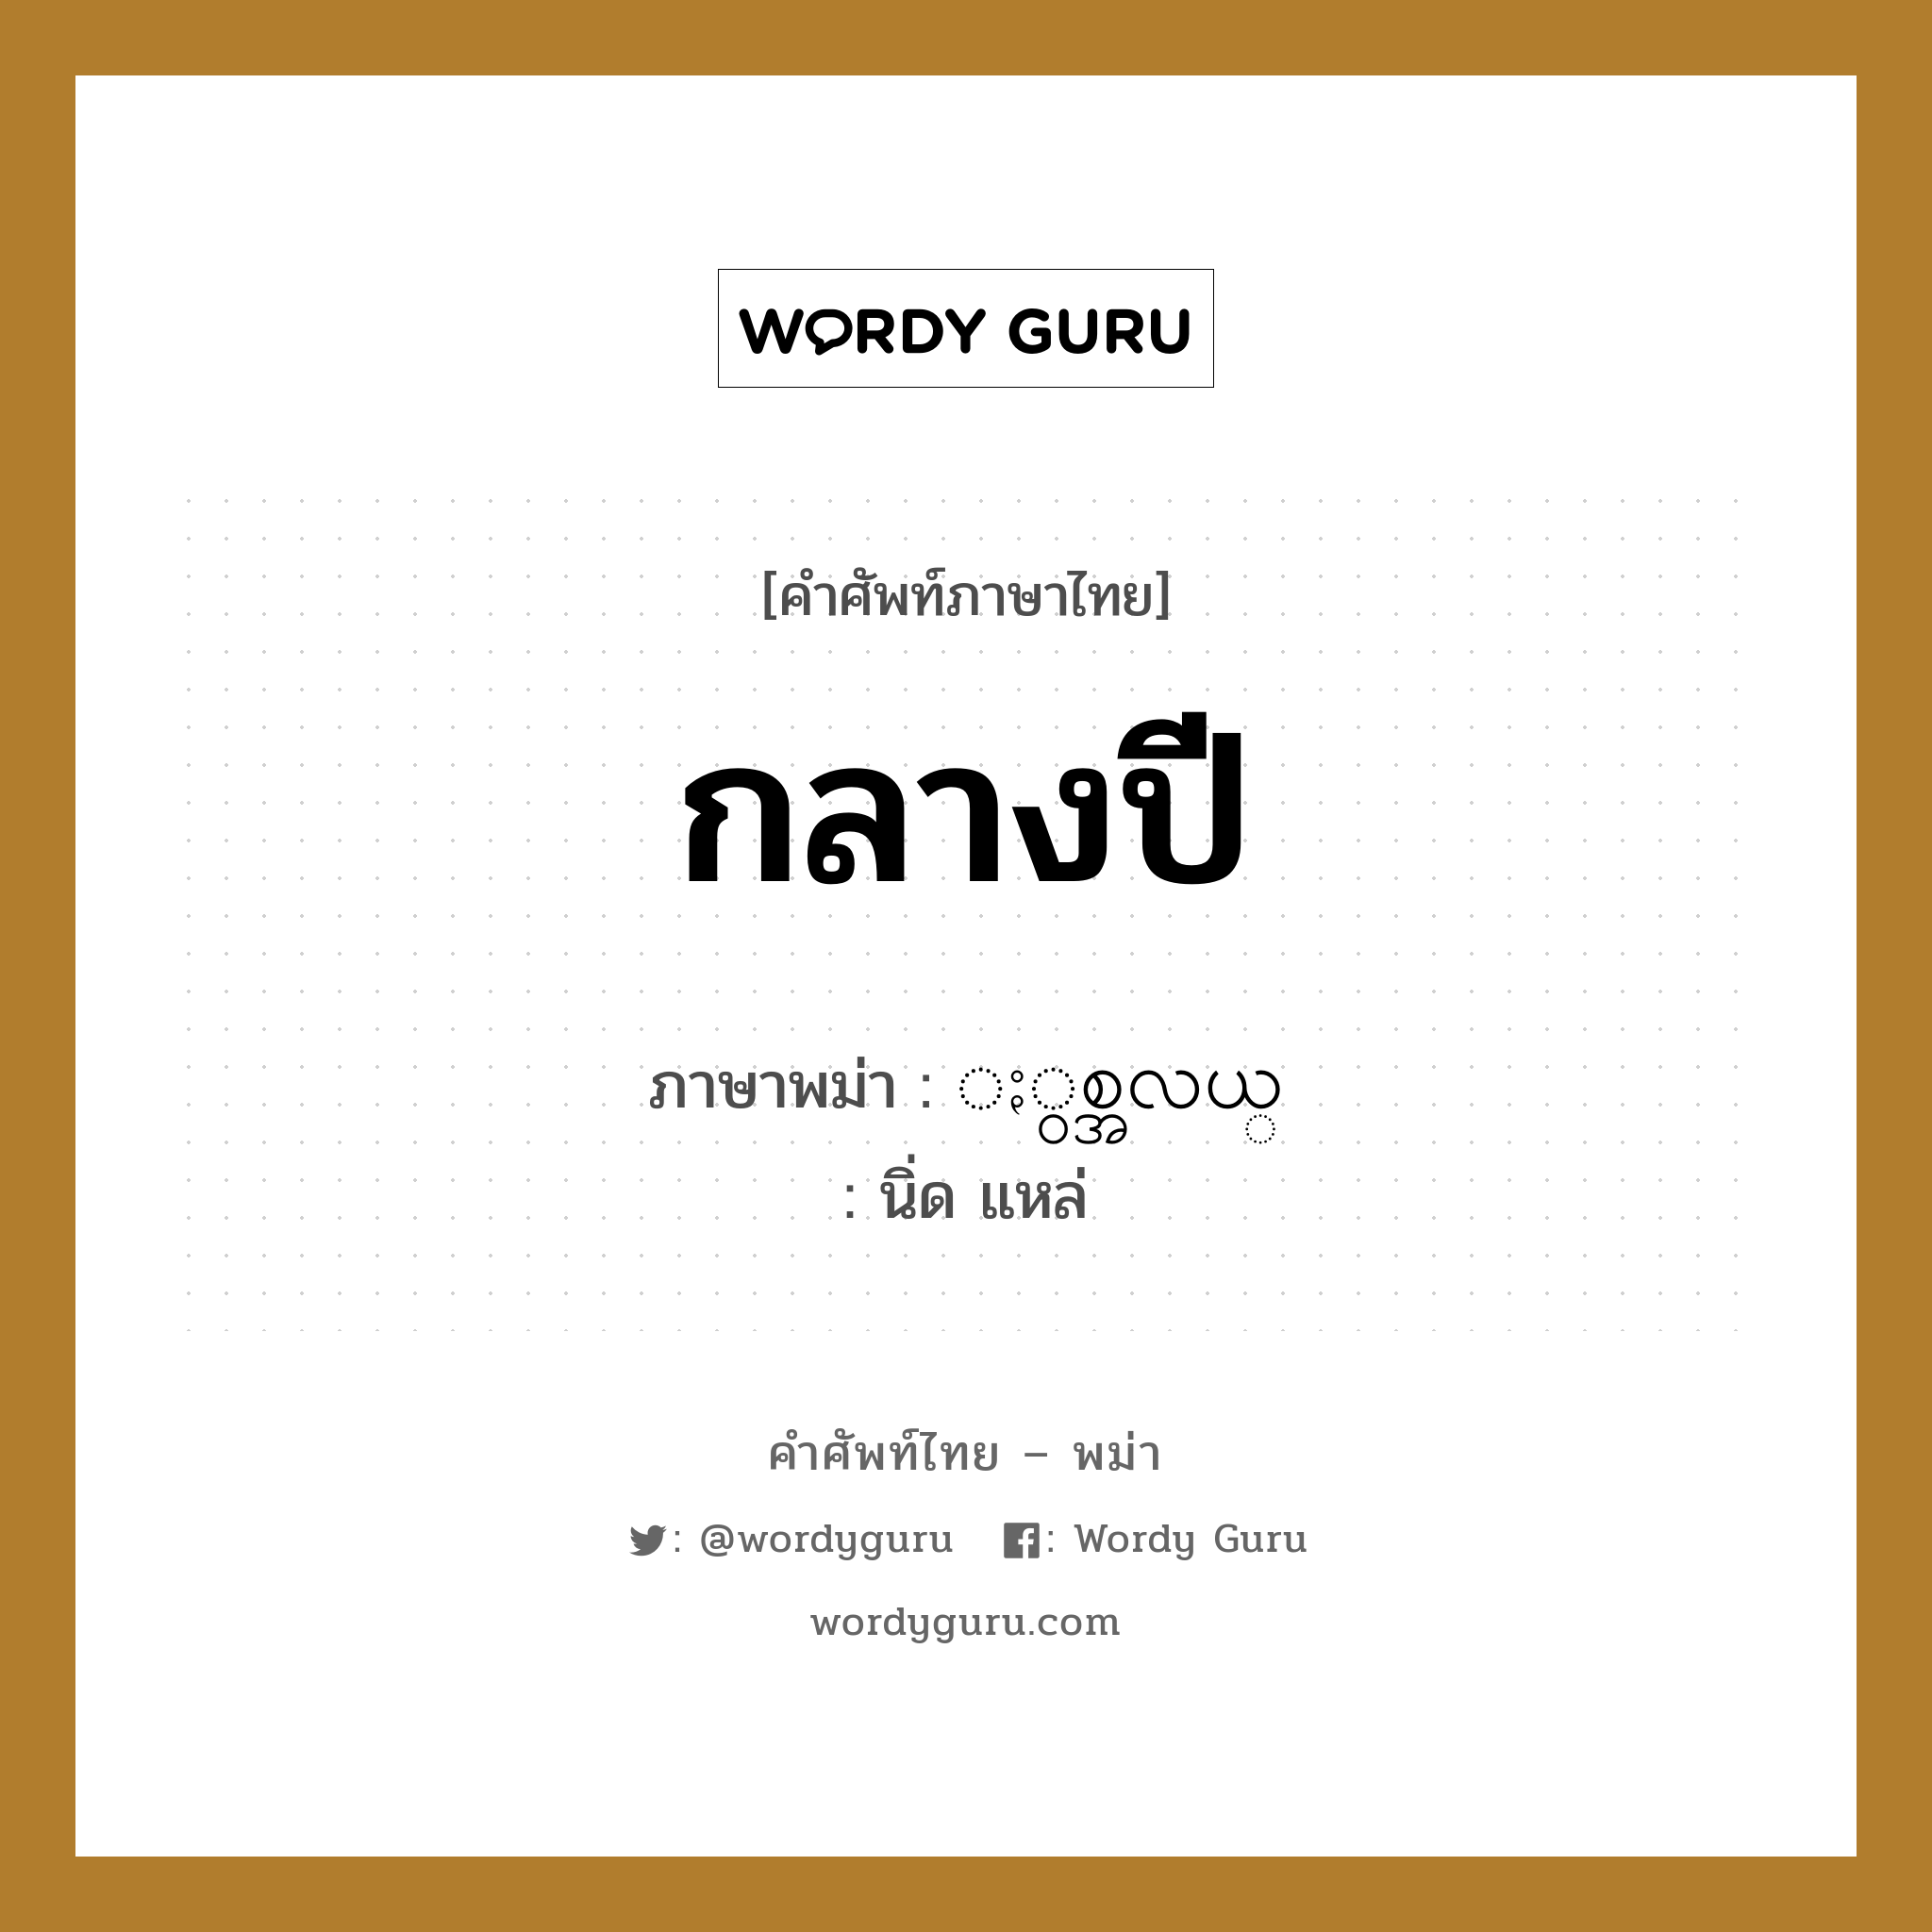 กลางปี ภาษาพม่าคืออะไร, คำศัพท์ภาษาไทย - พม่า กลางปี ภาษาพม่า ႏွစ္အလယ္ หมวด หมวดวัน เดือน ปี นิ่ด แหล่ หมวด หมวดวัน เดือน ปี